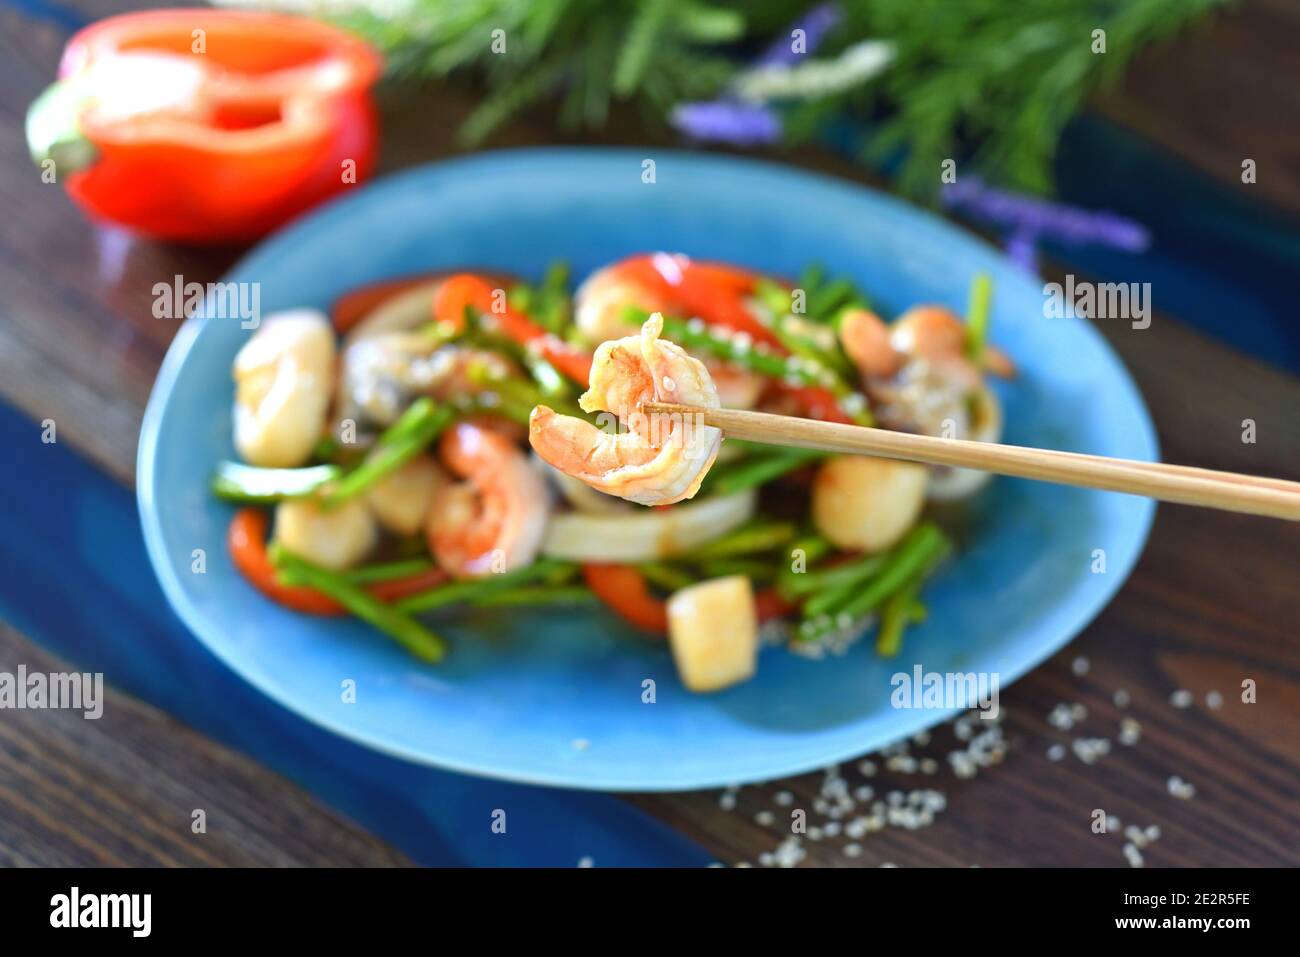 Les baguettes maintiennent les crevettes contre un plat asiatique avec des fruits de mer, les légumes dans la sauce soja sur une assiette. Pour un menu asiatique Banque D'Images